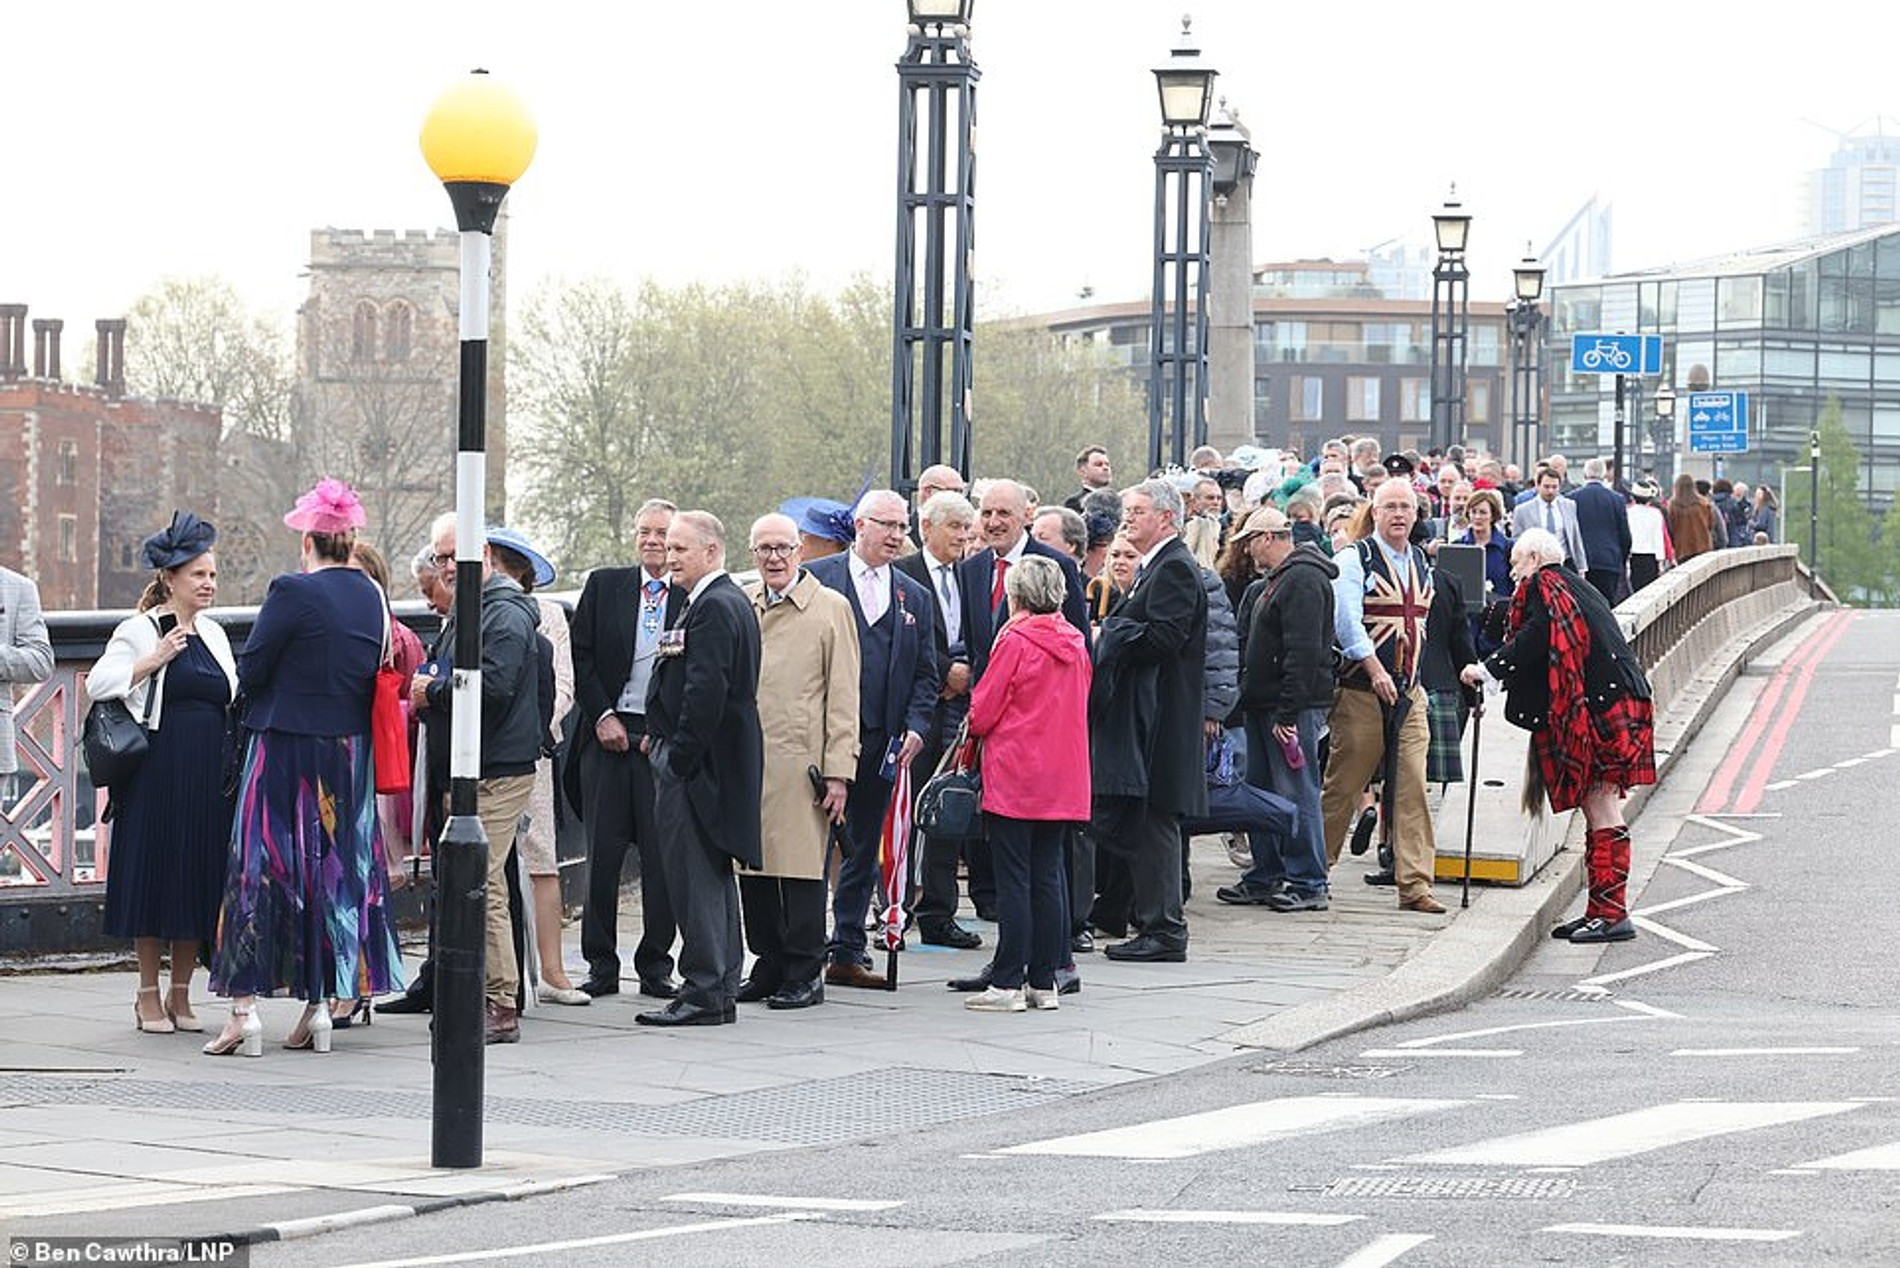 Очередь из гостей службы в Вестминстерском аббатстве растянулась на 1,6 км
Фото: Daily Mail